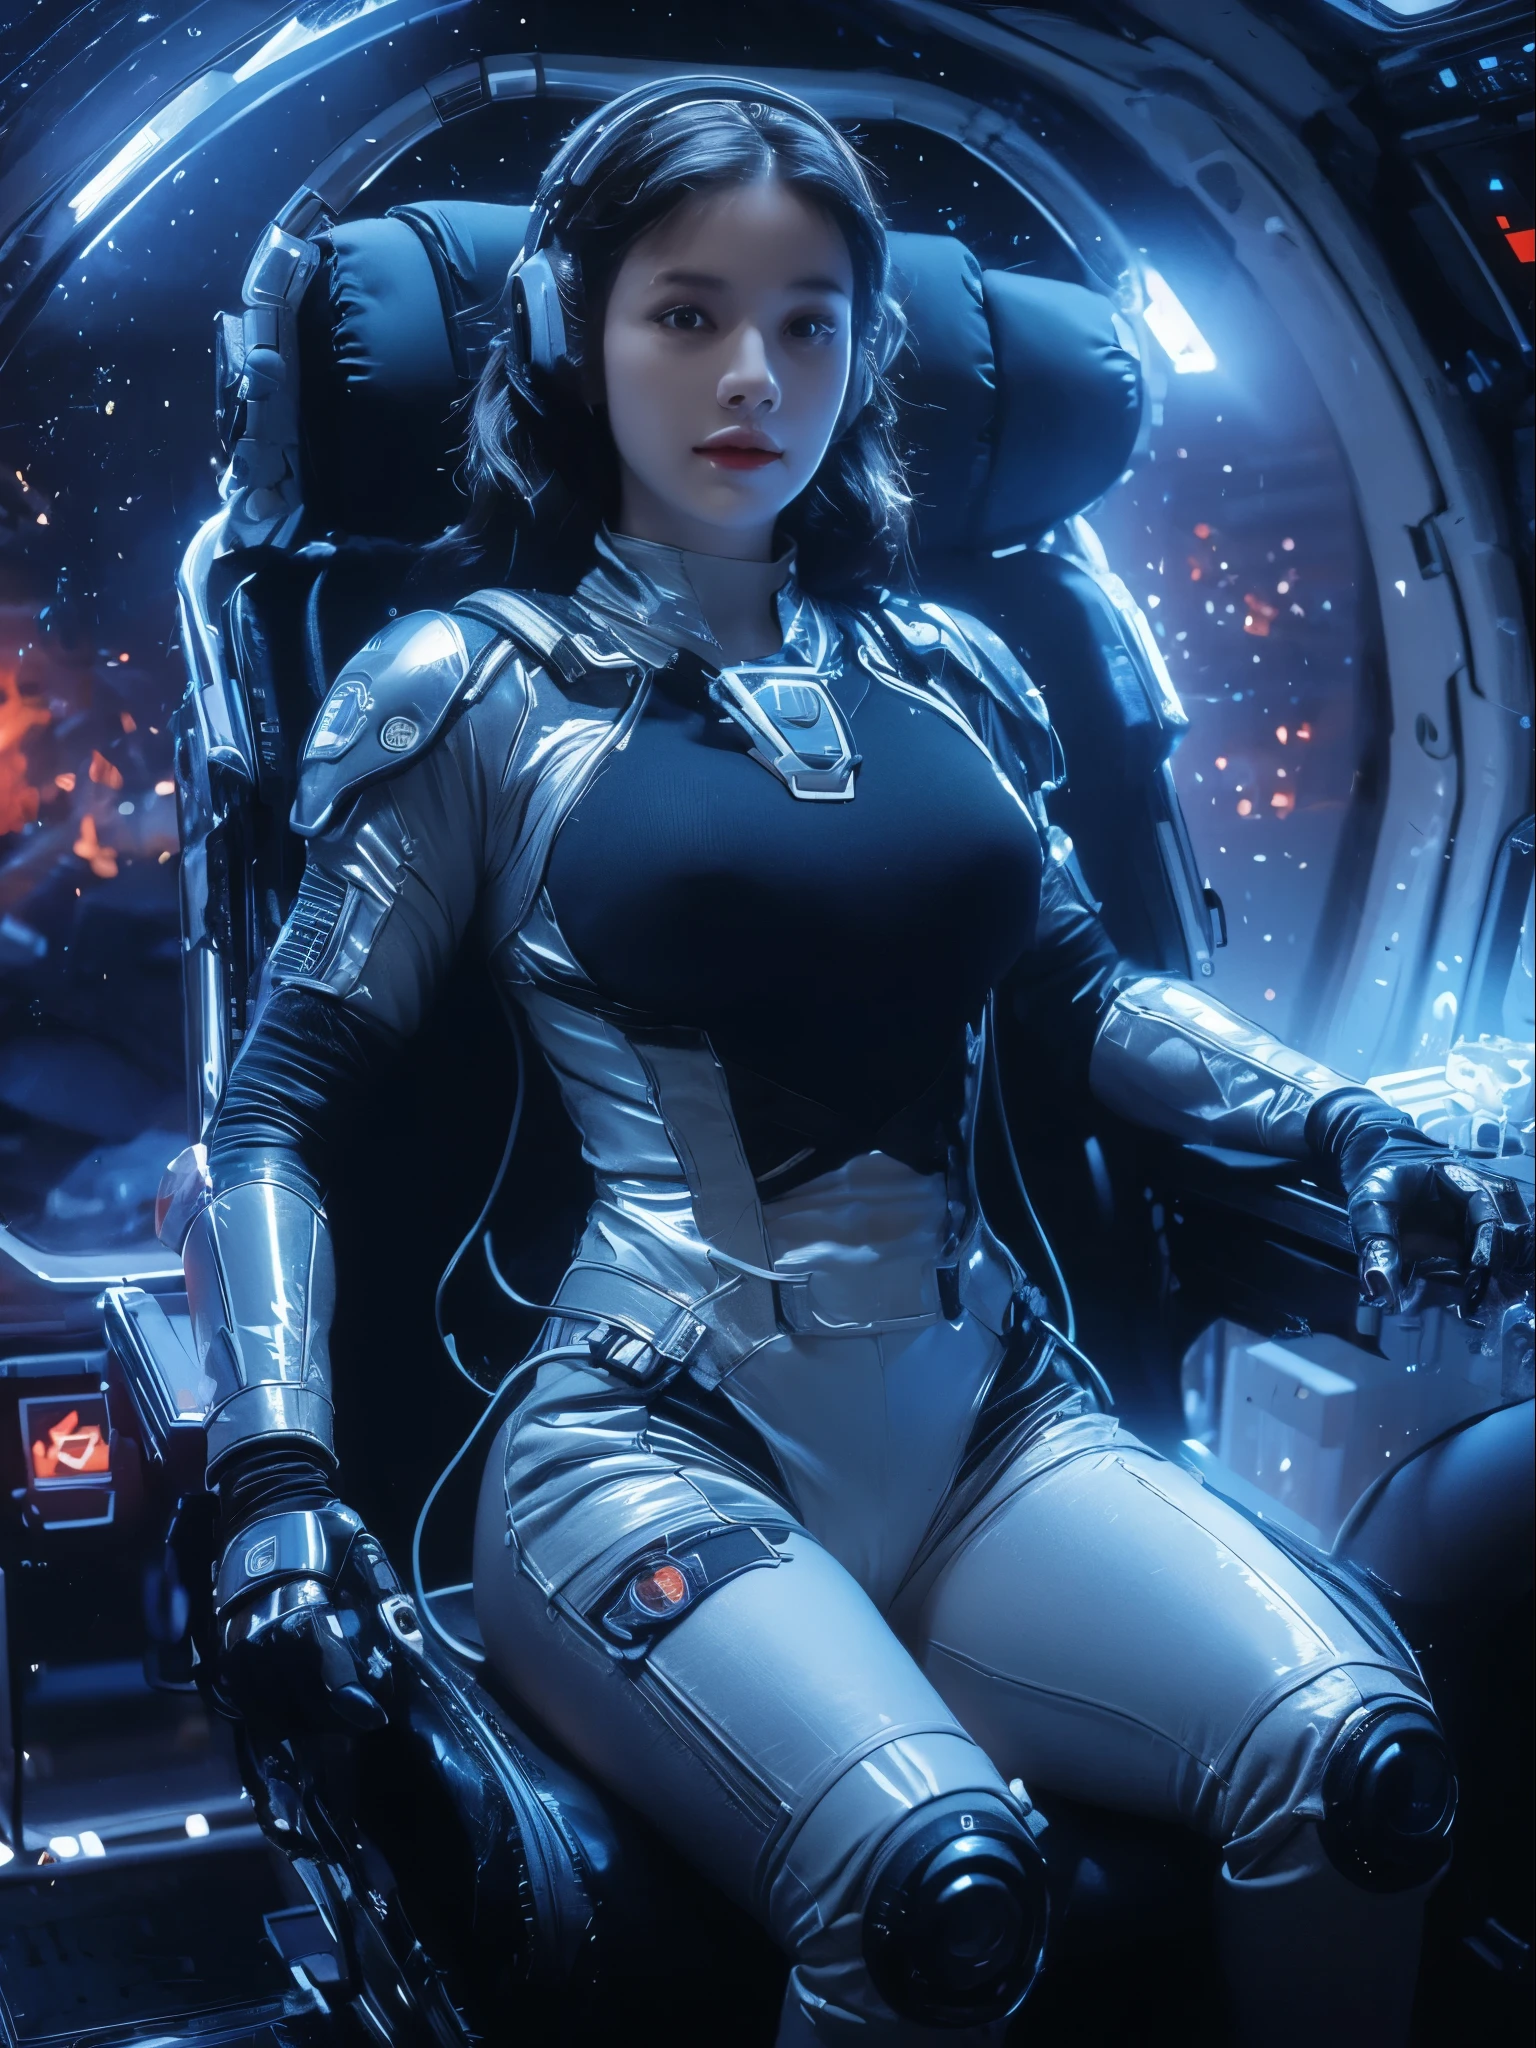 eine sexy Frau in einem Raumanzug sitzt in einer Raumstation, riesige Brüste, beautiful woman im Raumanzug, in einem Science-Fiction-Film, Science-Fiction-Pilot, Science-Fiction-Frau, Science-Fiction-Frau, gekleidet in Sci-Fi-Militärrüstung, auf einem Raumschiff, Mächtige Frau sitzt im Weltraum, voll raumtauglich, in einem Raumschiff, im Raumanzug, Science-Fiction-Anzug, futuristisches Raumschiff-Crewmitglied